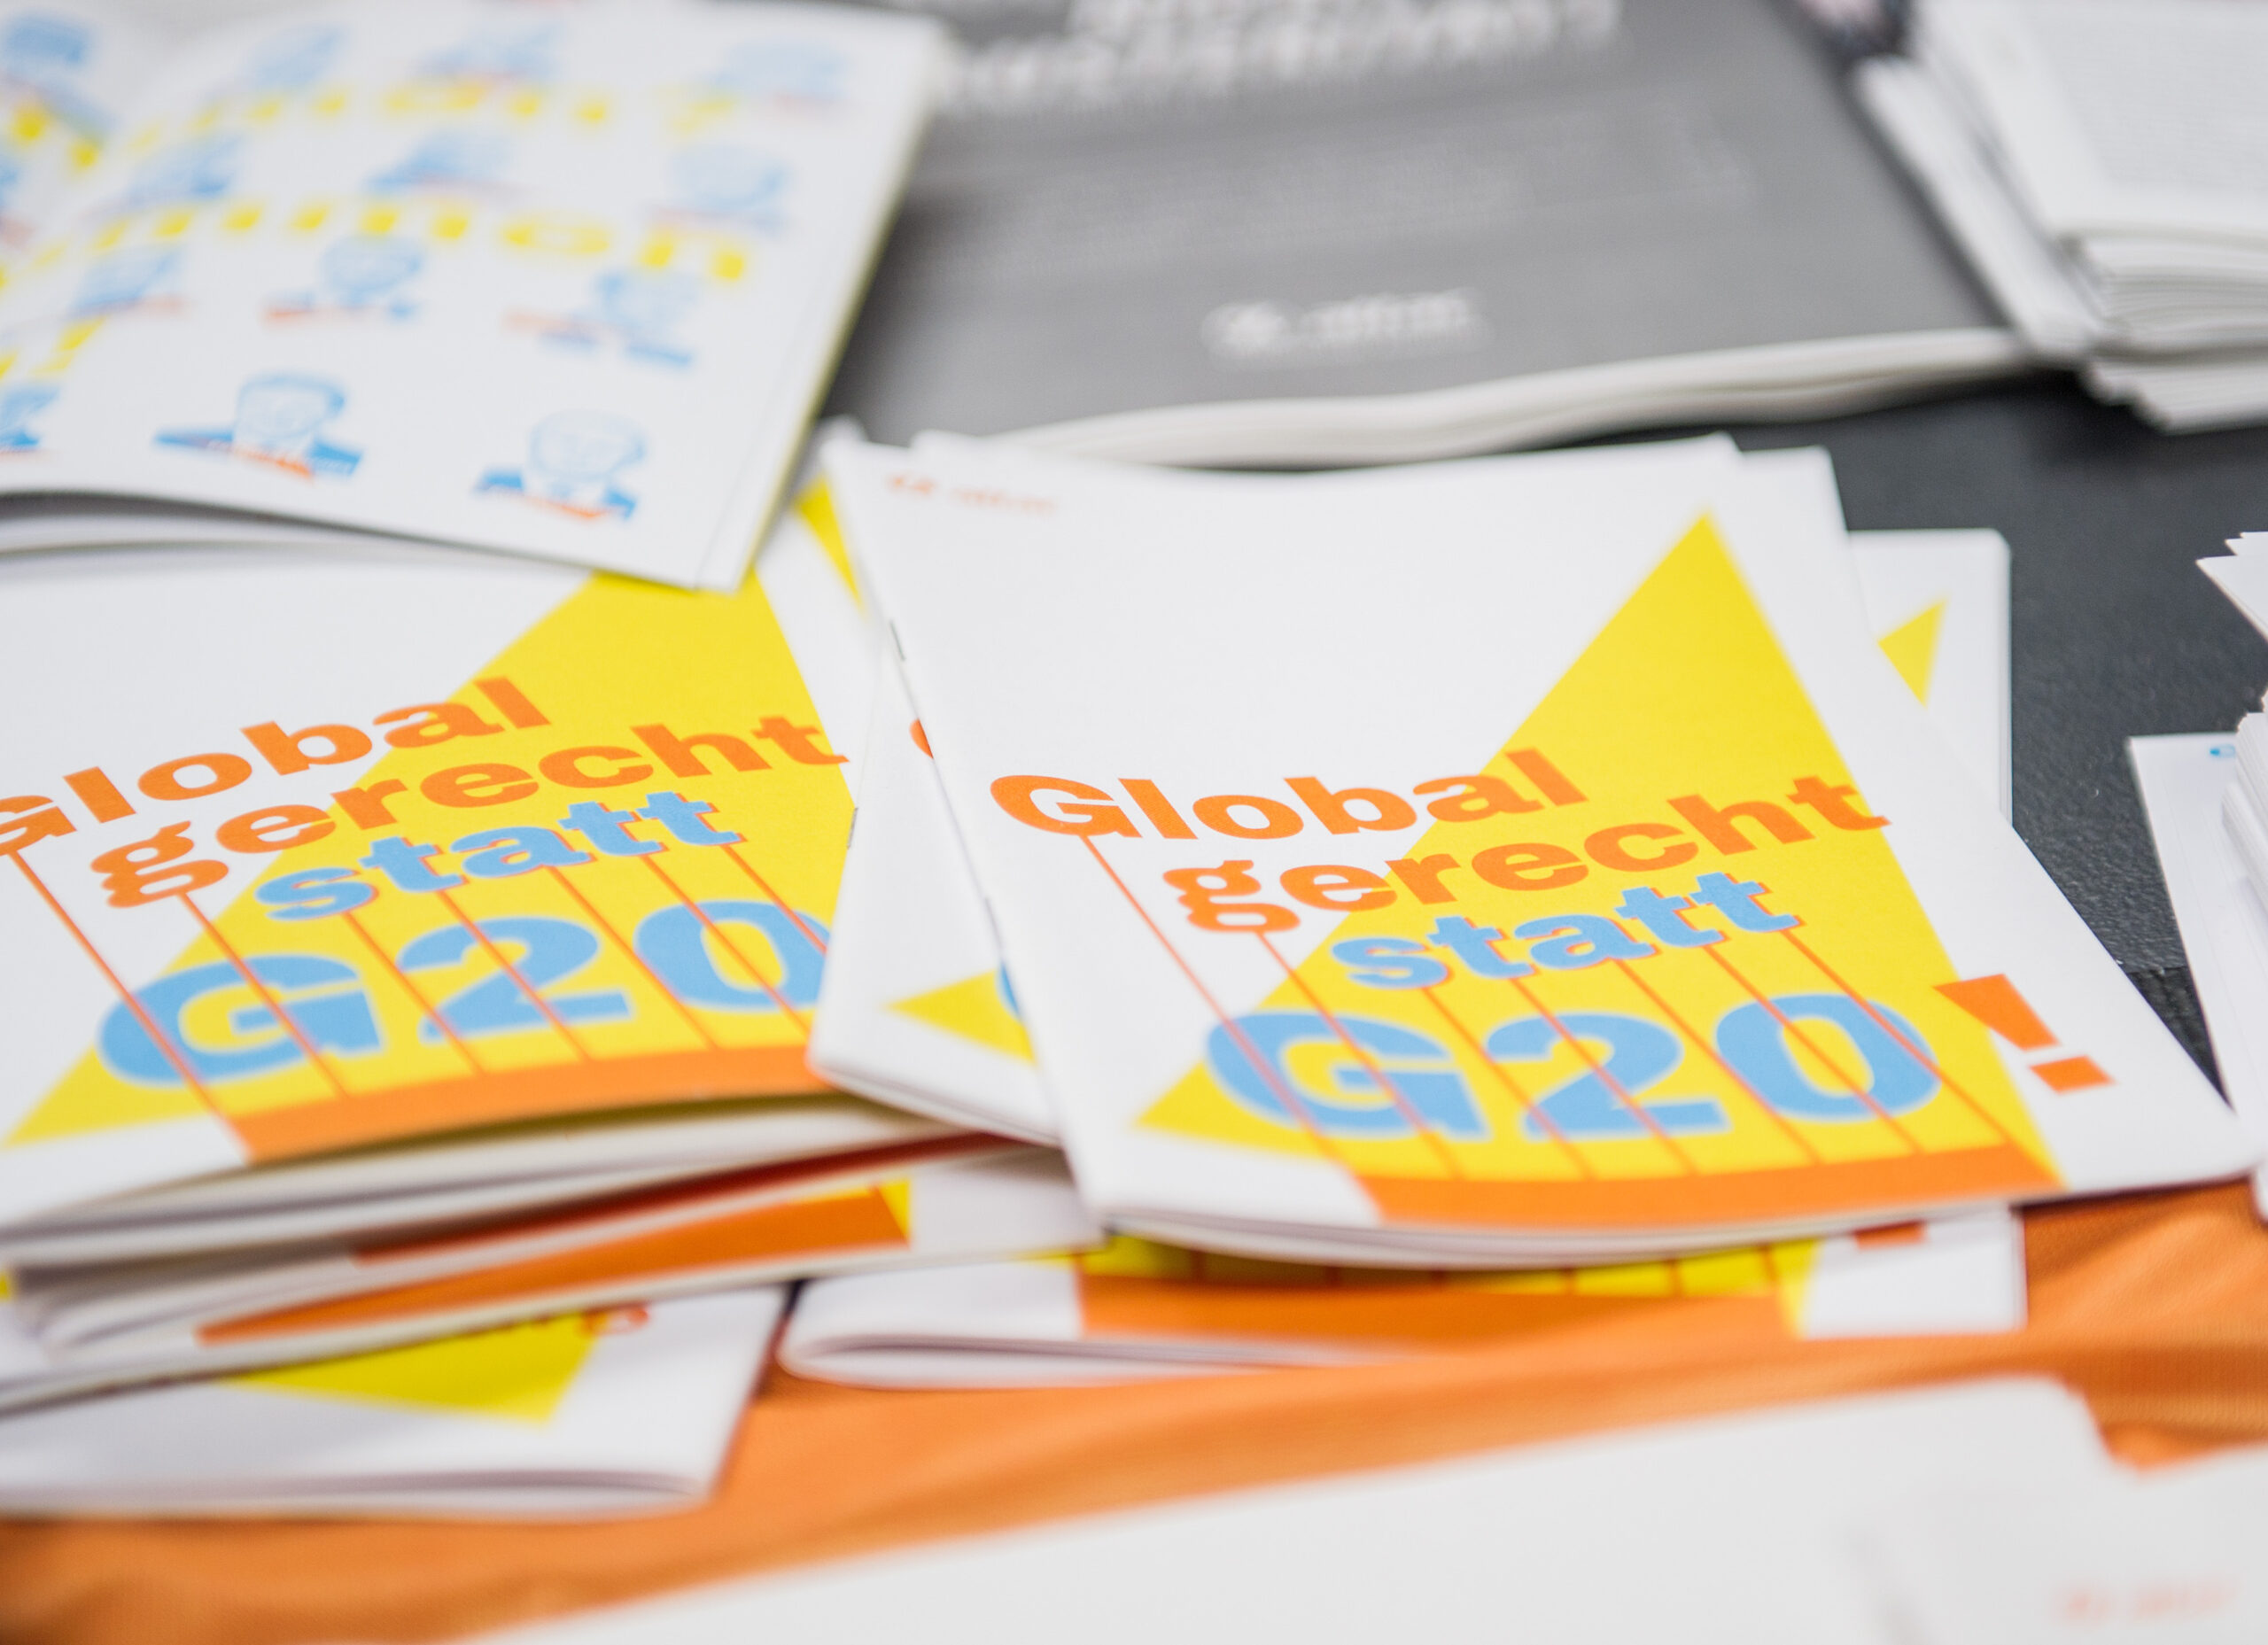 Broschüren mit der Aufschrift "Gerecht statt G20" sind am 05.07.2017 in Hamburg am Stand der Organisation Attac beim Gipfel für globale Solidarität zu sehen . Der Gipfel für globale Solidarität ist eine Gegenveranstaltun